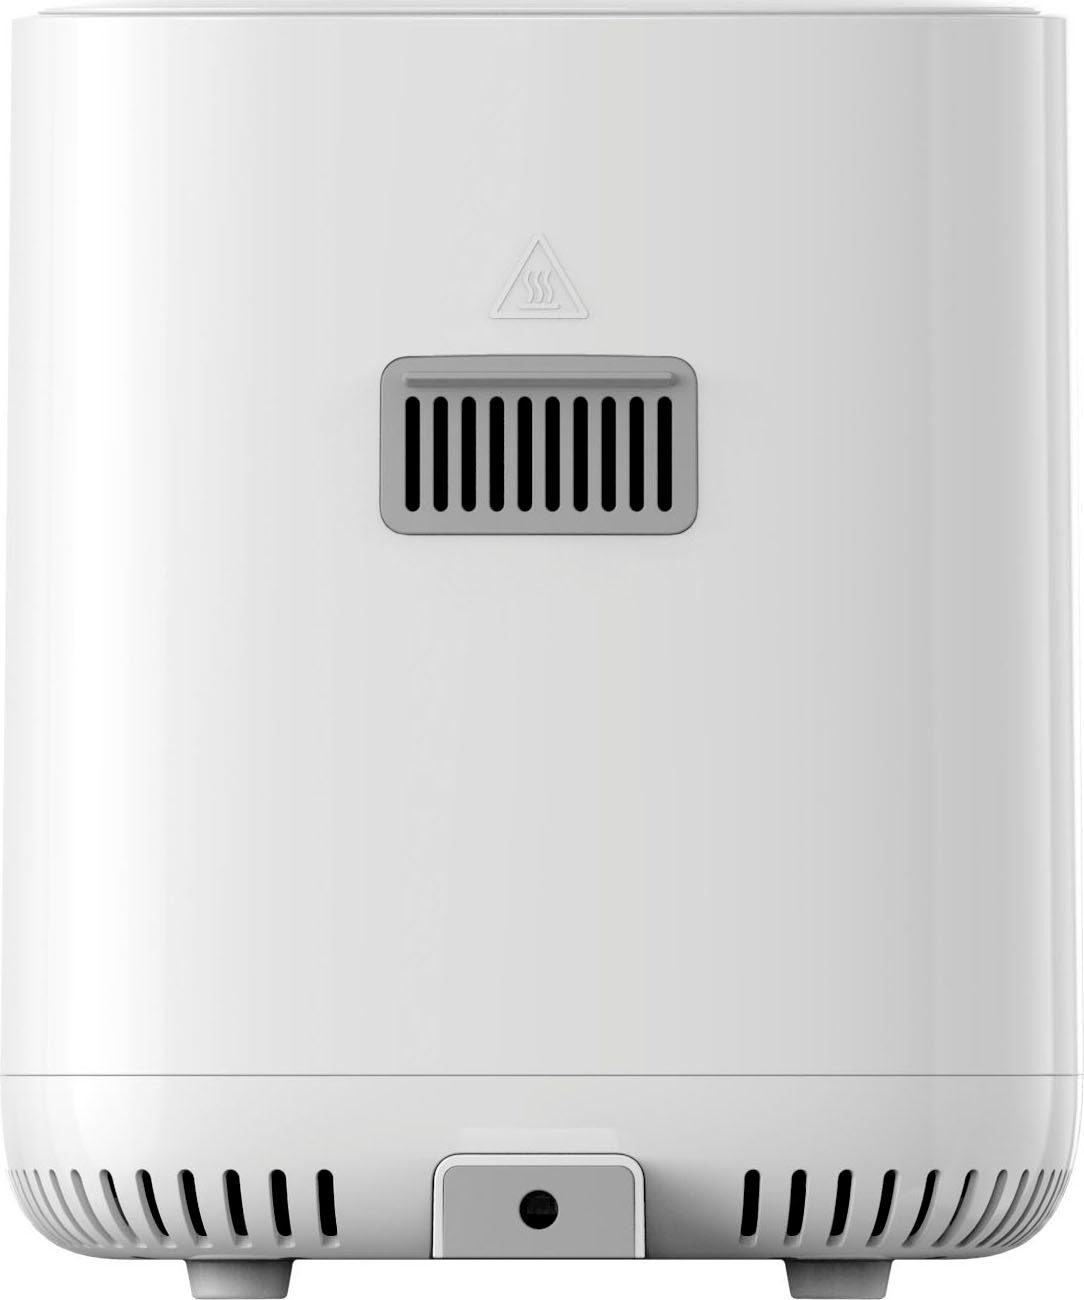 Heißluftfritteuse Xiaomi Air Pro EU, 4L 1600 W Smart Fryer